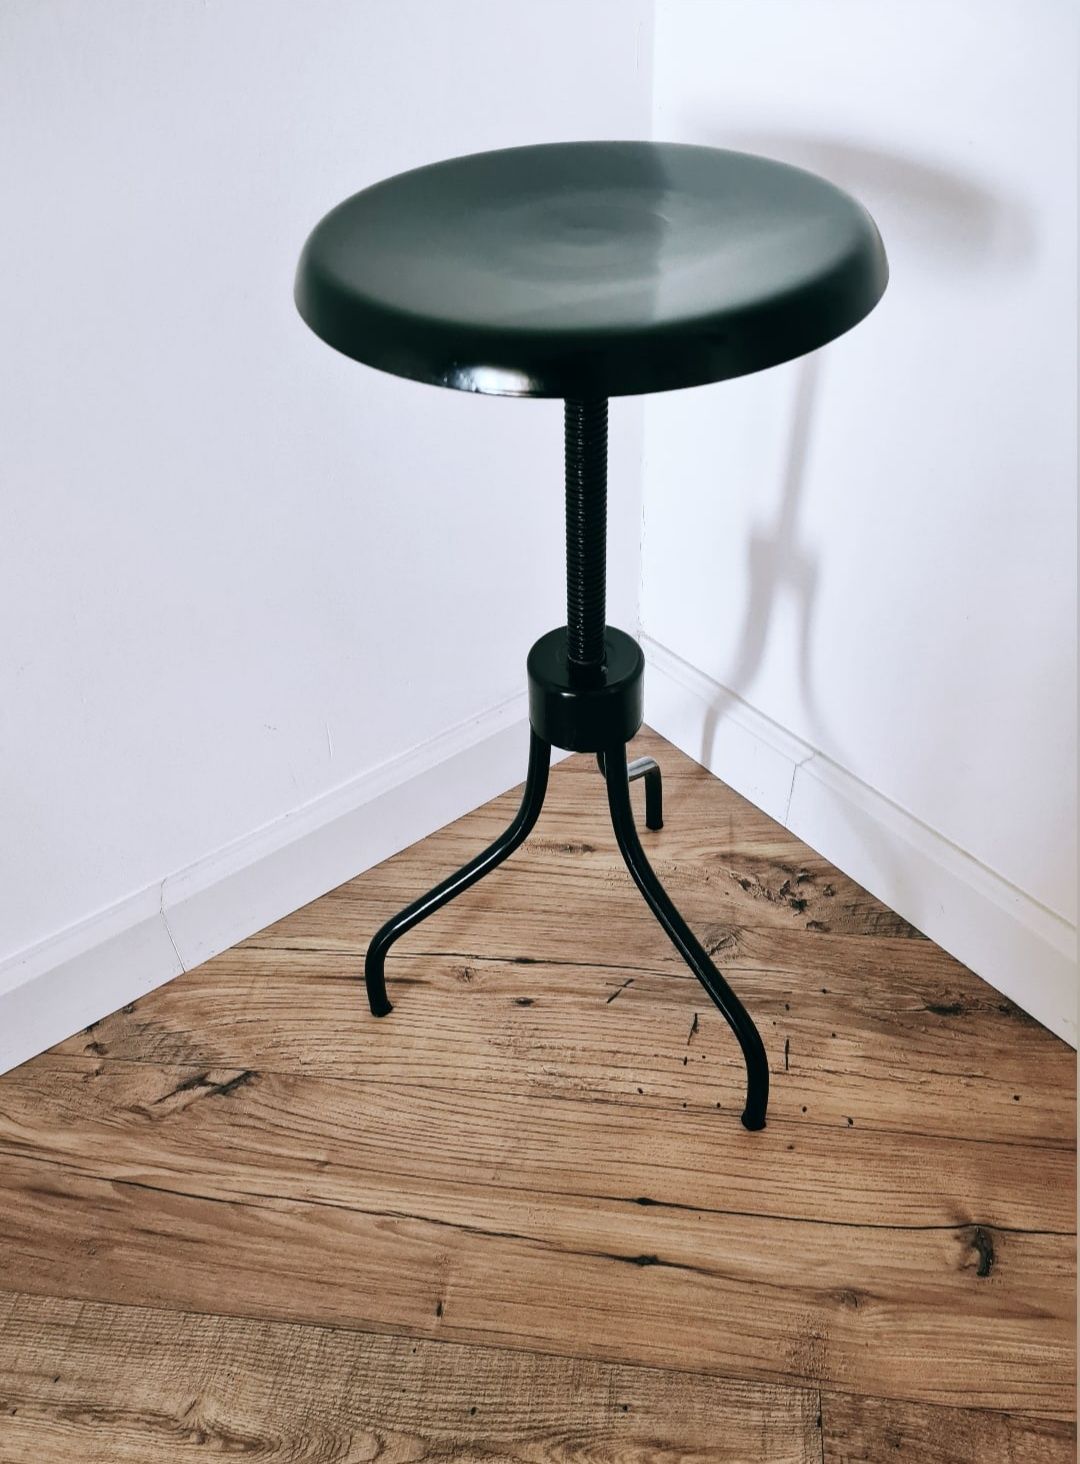 Продаю винтажный винтовой стул-столик, реставрированный